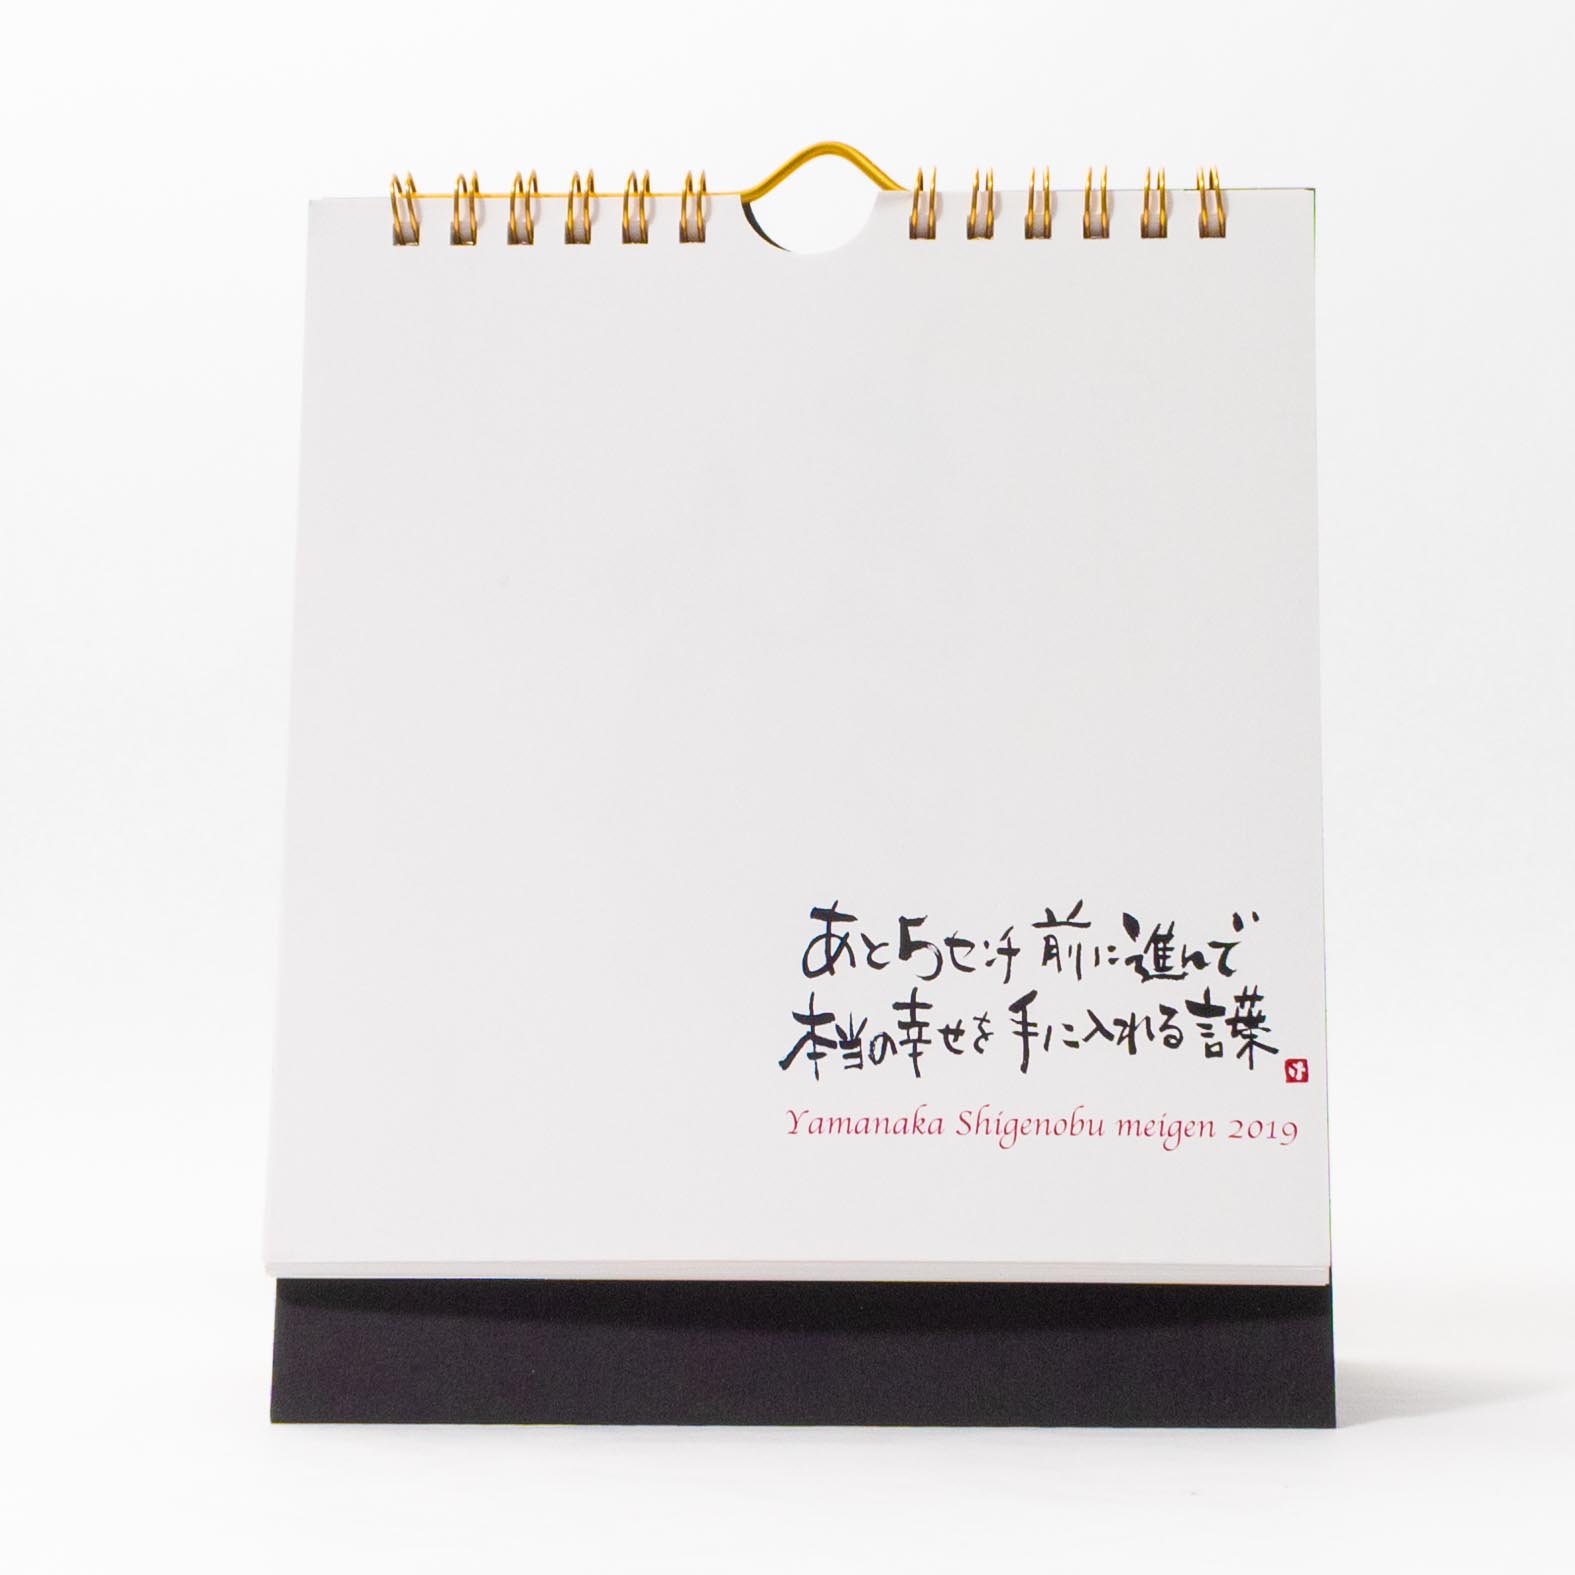 「金子  慶子 様」製作のオリジナルカレンダー